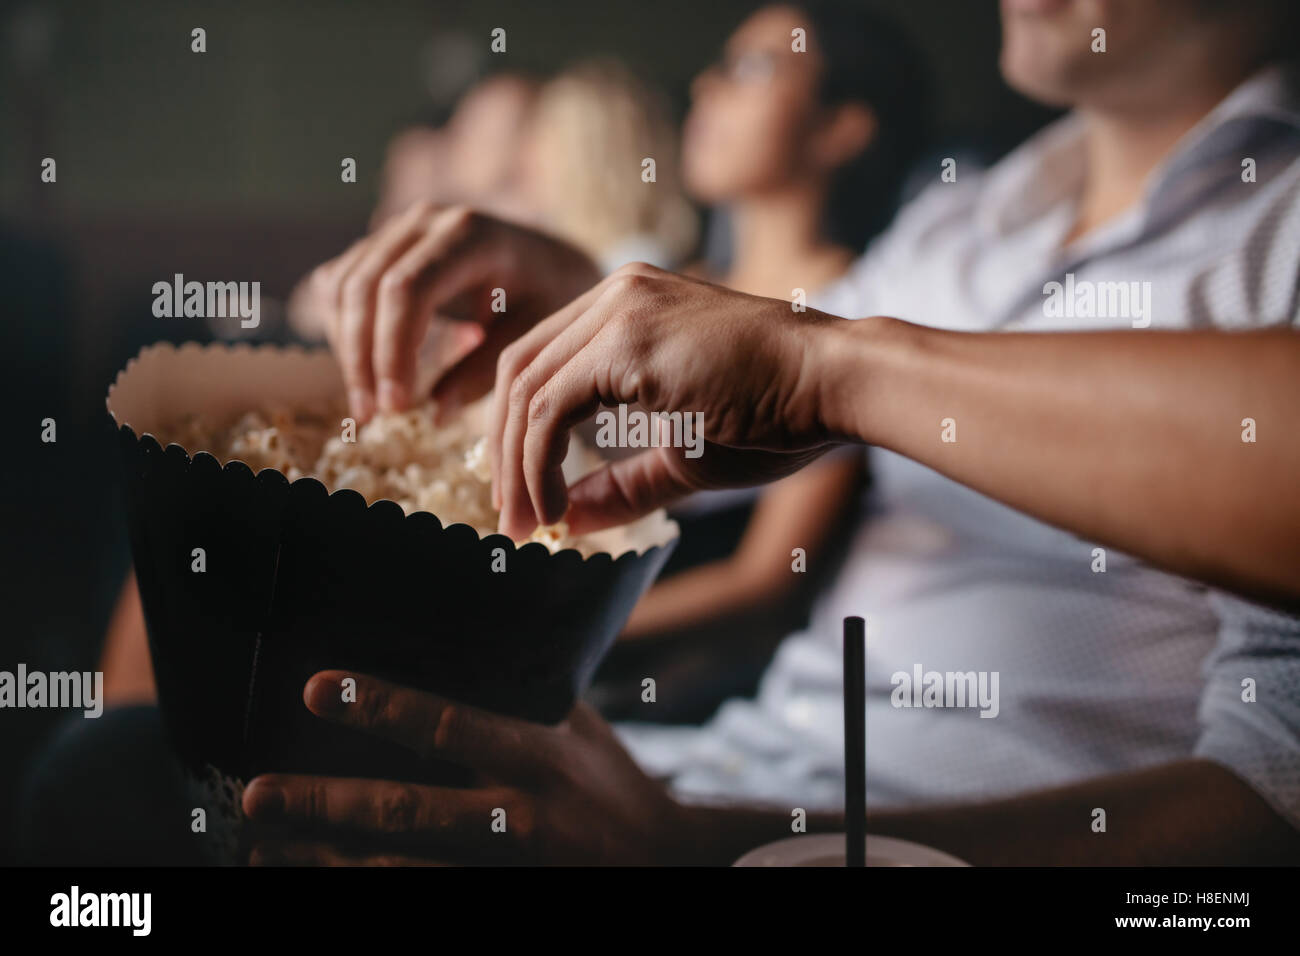 Gros plan des jeunes eating popcorn au cinéma, se concentrer sur les mains. Banque D'Images